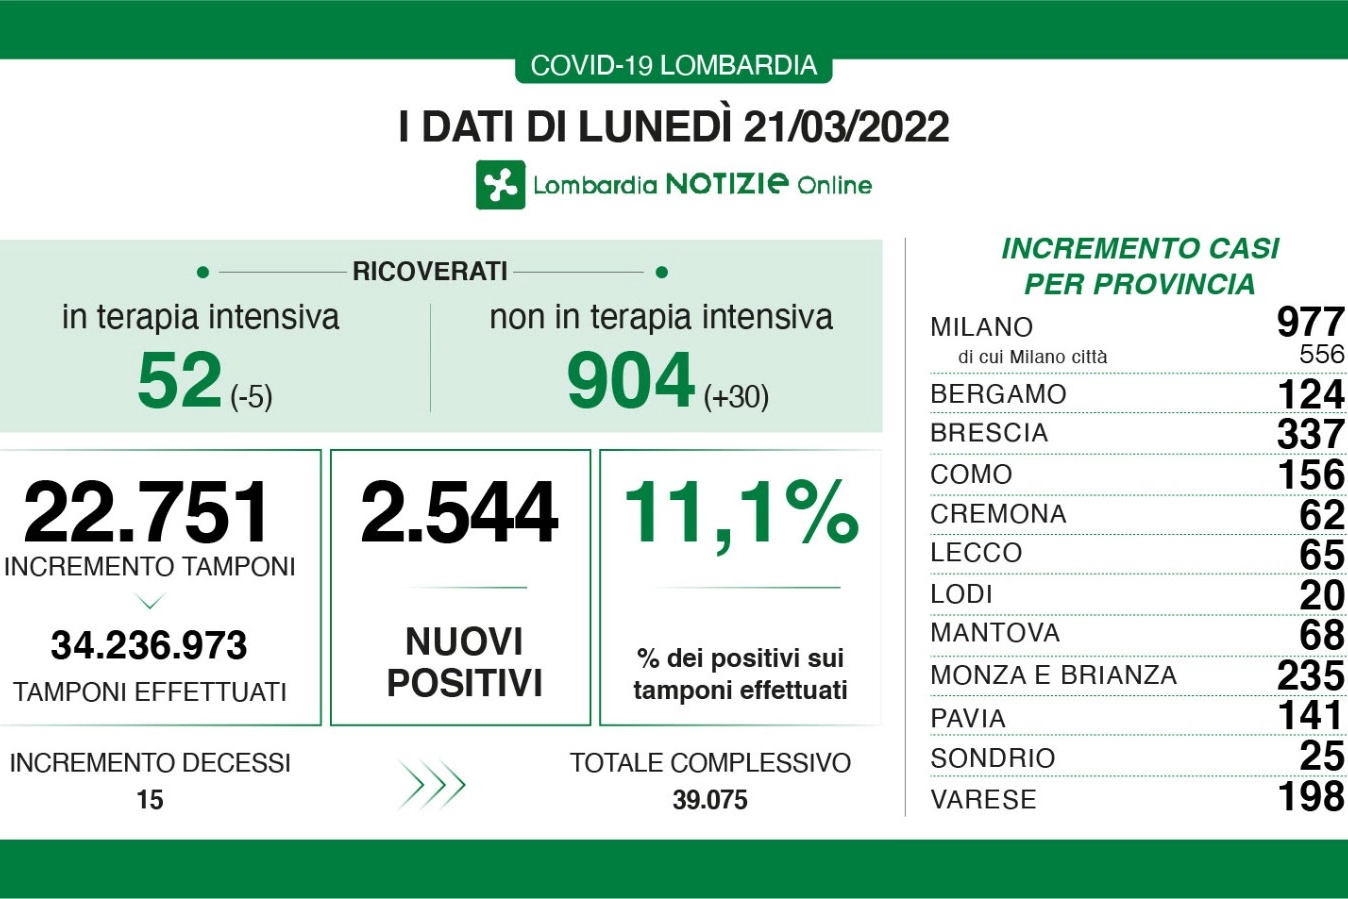 Covid, i dati in Lombardia del 21 marzo 2022